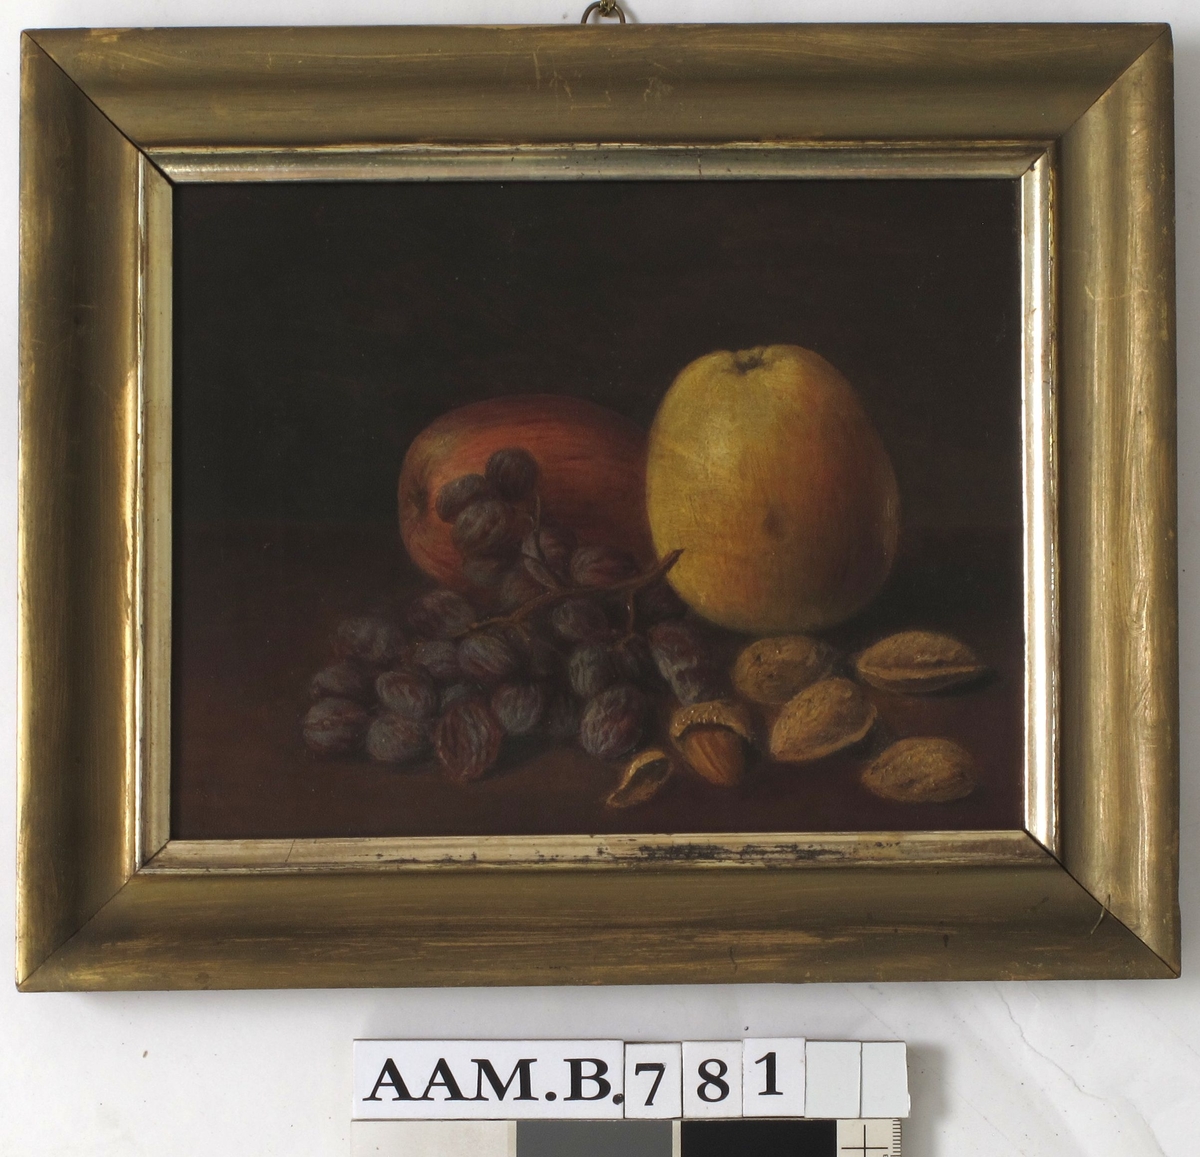 Stilleben, frukt og nøtter. På en brunmalt bordplate ligger 2 epler,en klase rosiner, 5 krakkmandler. Bakgrunn er mørk gråbrun, litt lysere i høyre side.